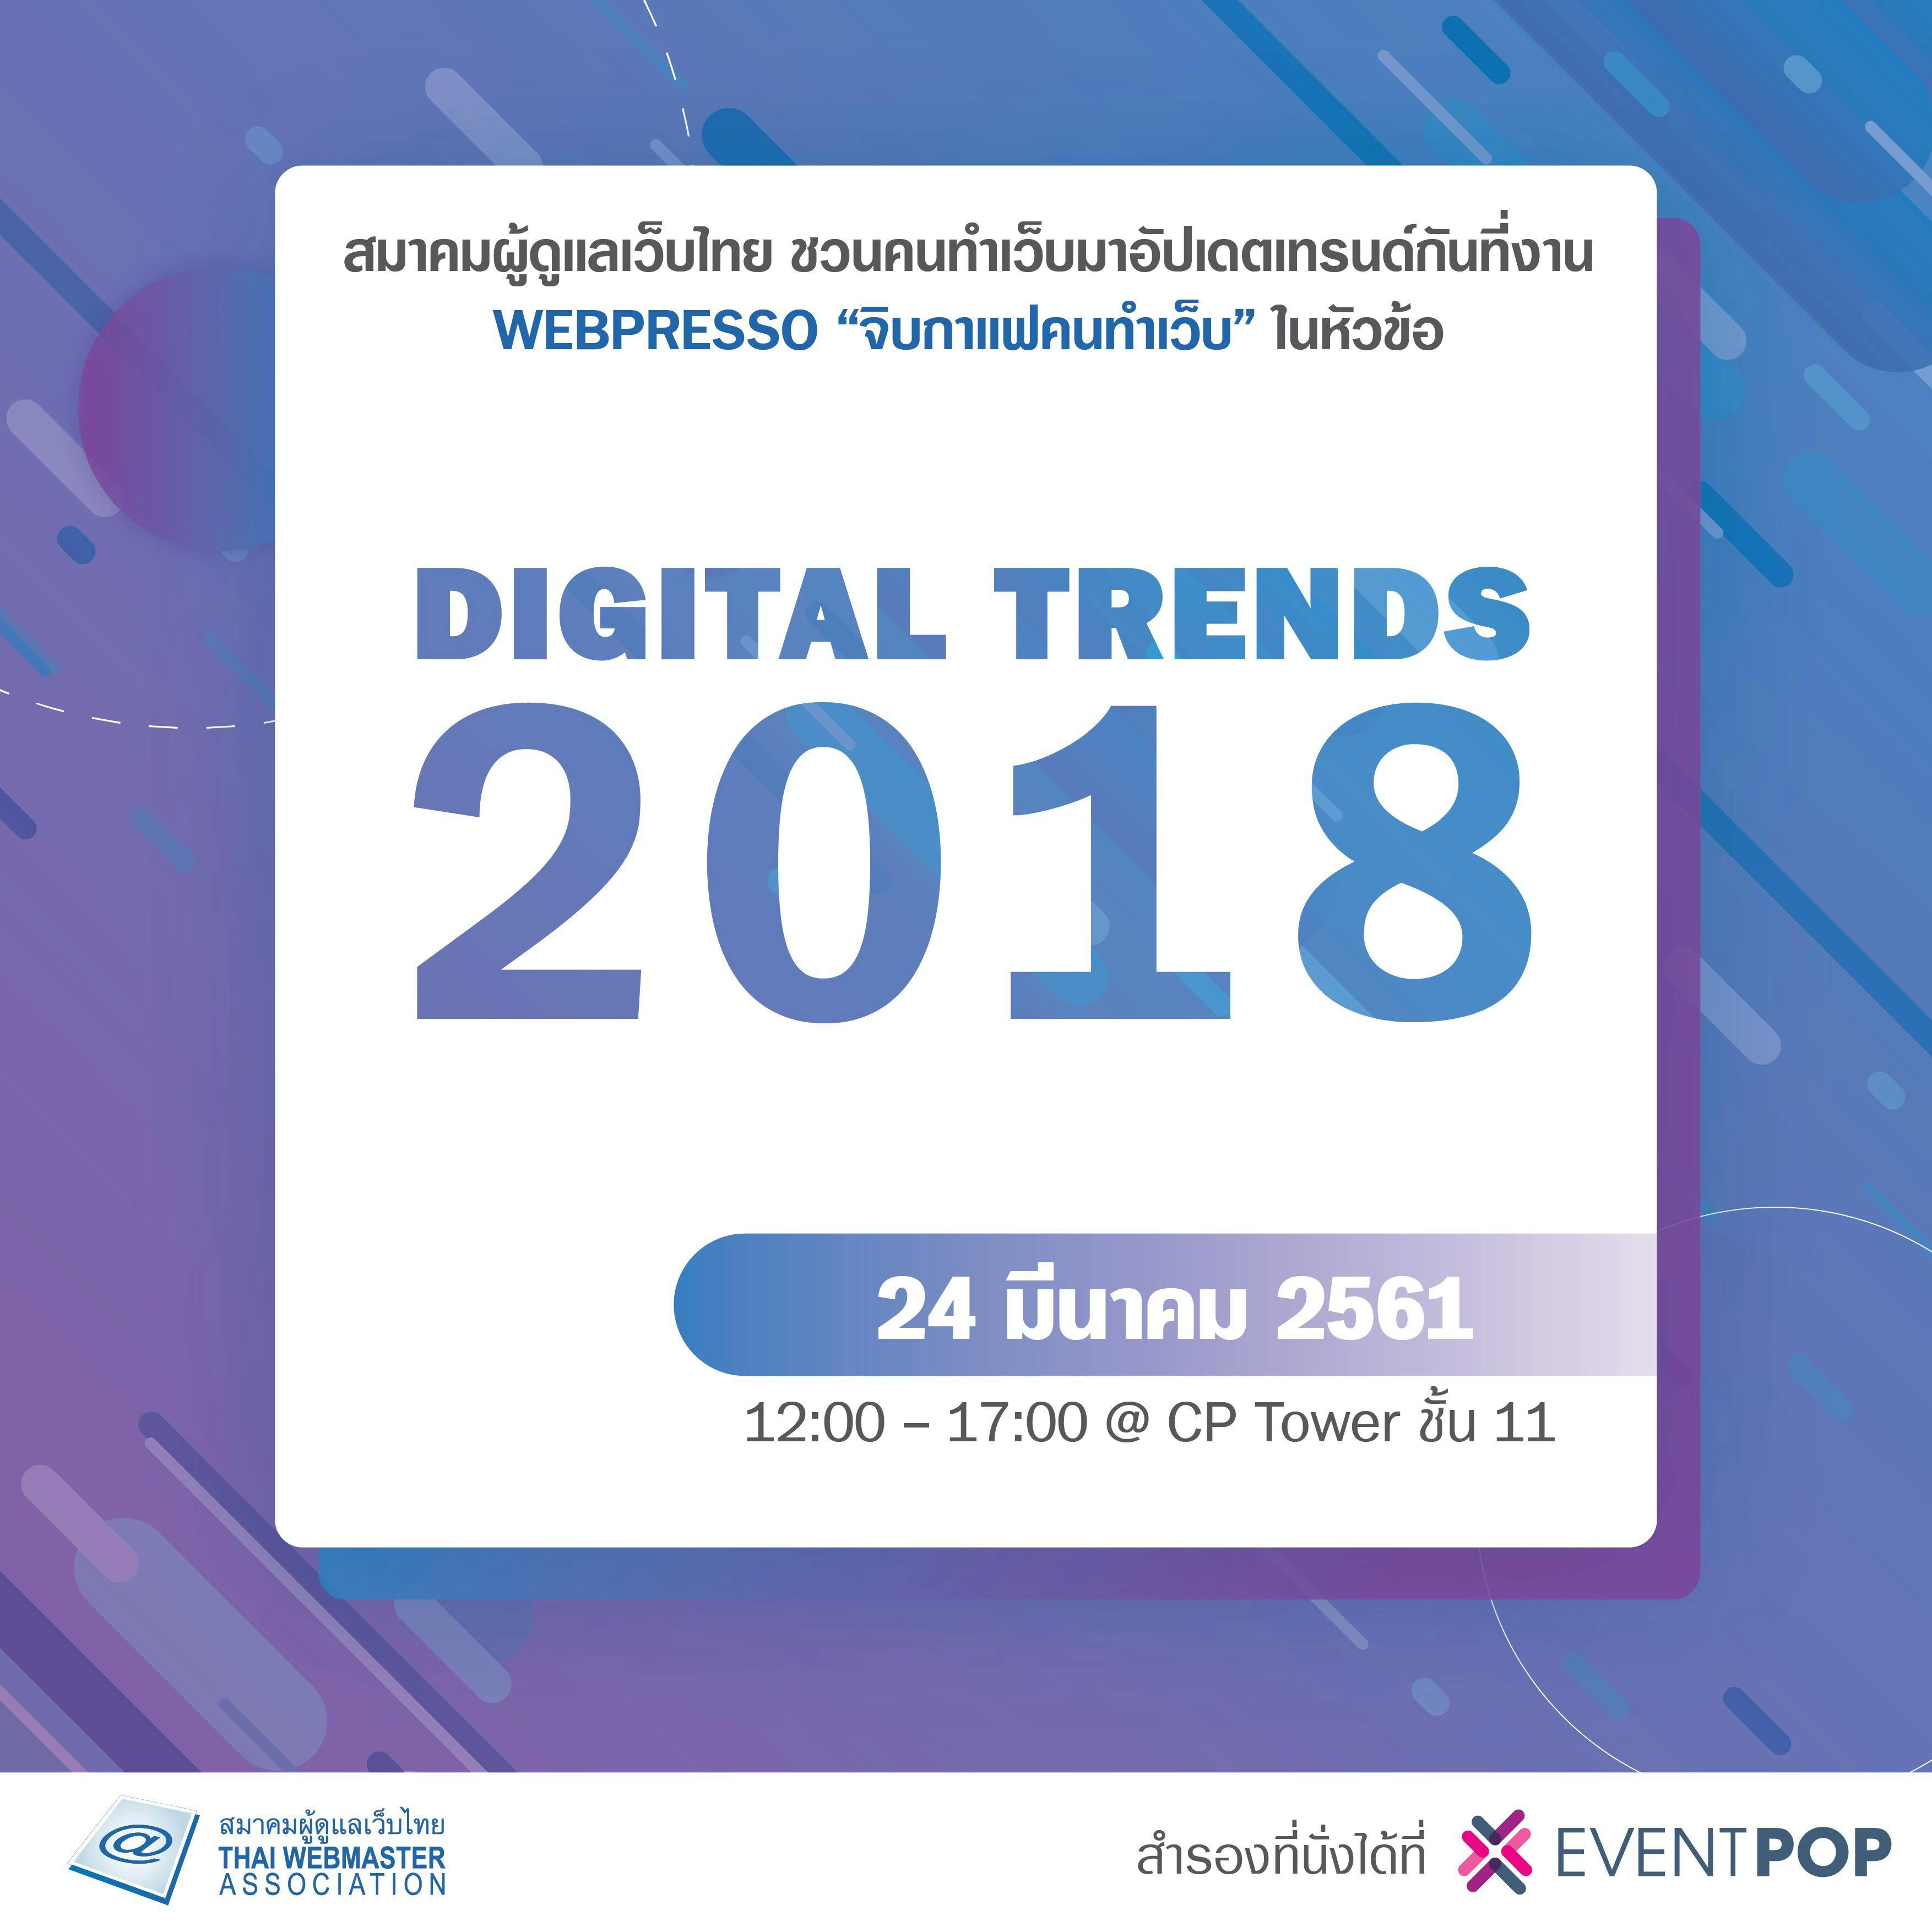 Cover Image for “Digital Trend 2018” WebPresso จิบกาแฟคนทำเว็บ โดยสมาคมผู้ดูแลเว็บไทย